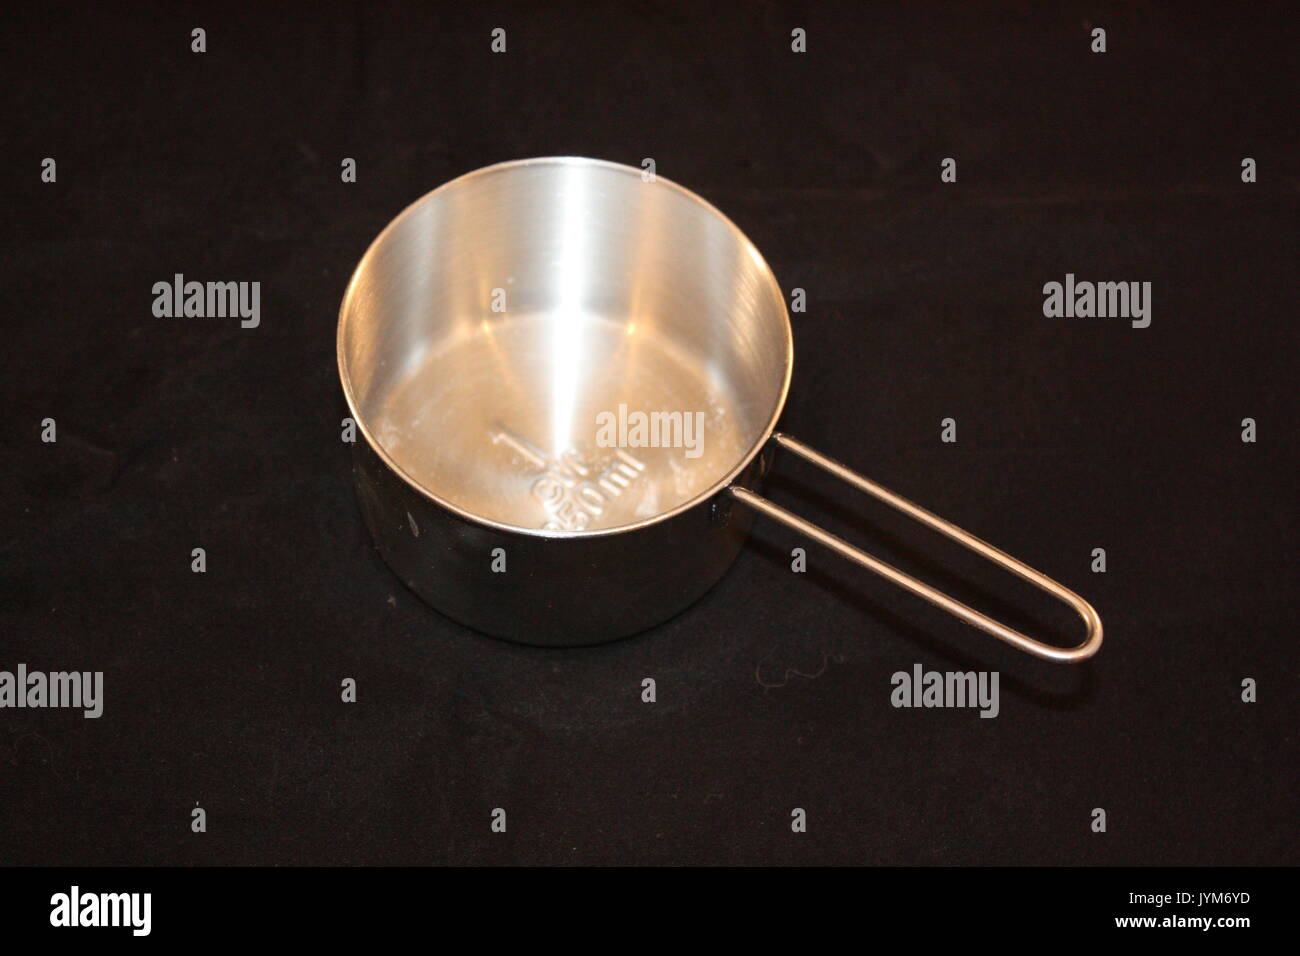 https://c8.alamy.com/comp/JYM6YD/stainless-steel-measuring-spoon-JYM6YD.jpg